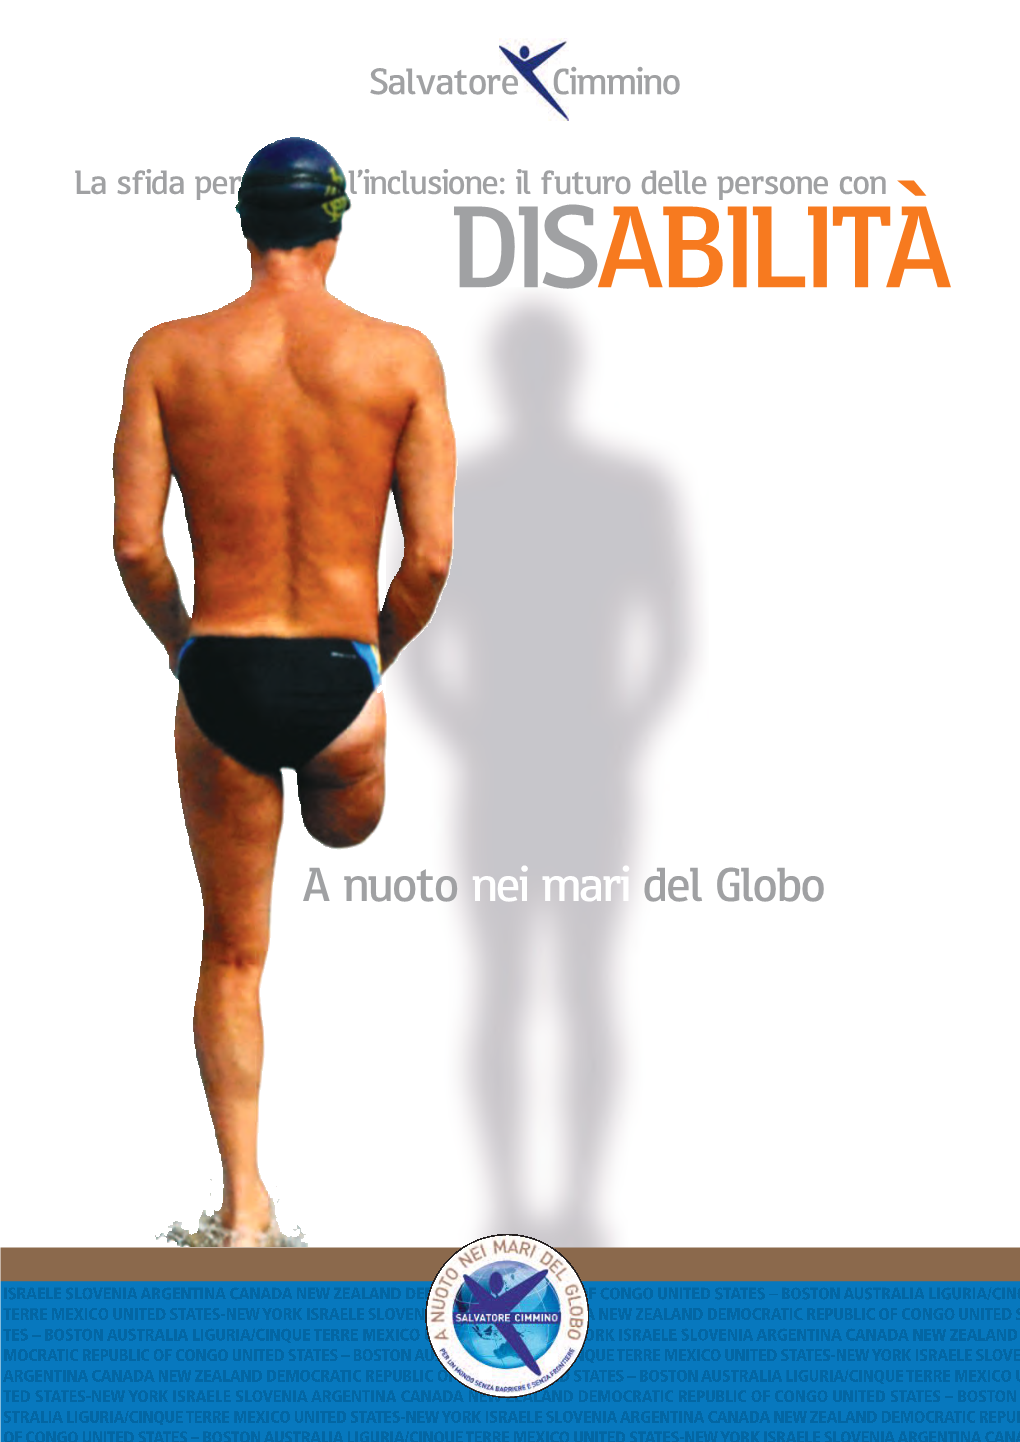 A Nuoto Nei Mari Del Globo El Mondo Esistono Oltre 750 Milioni Di Persone Con Ndisabilità, Il 10% Totale Della Popolazione